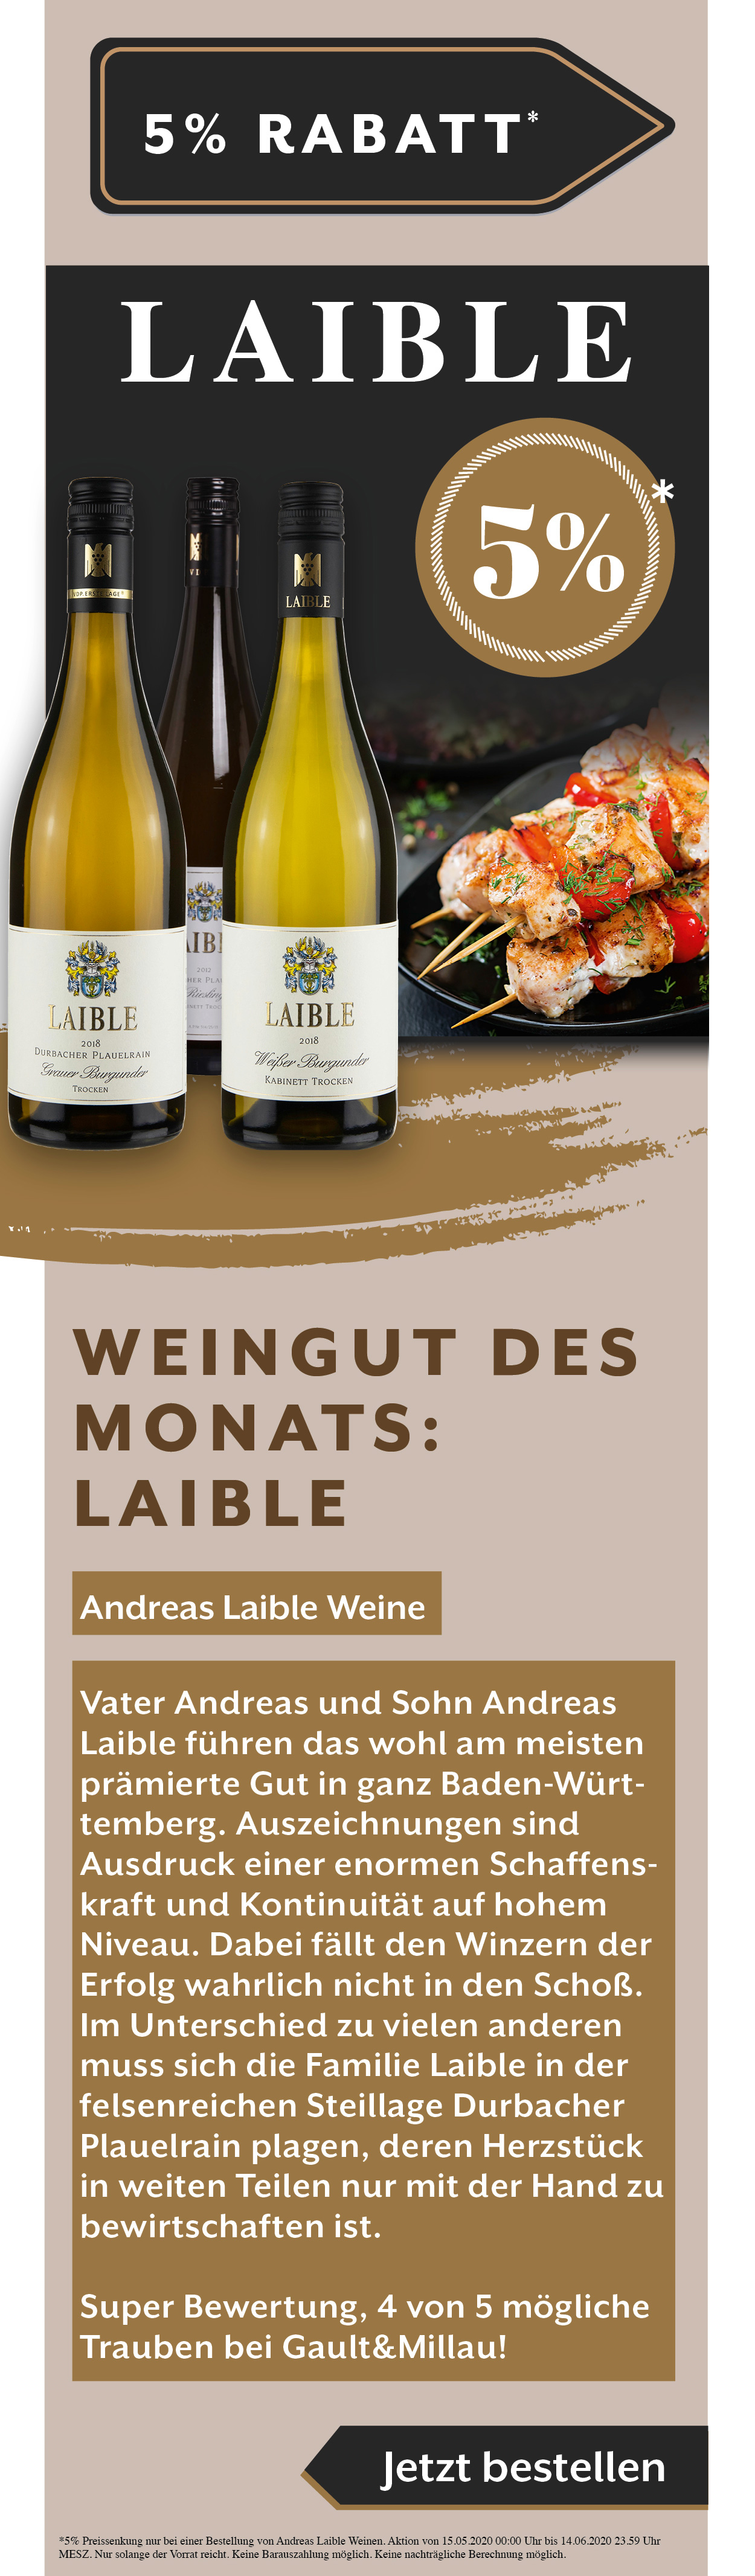 Andreas Laible Weine Weißwein Angebot